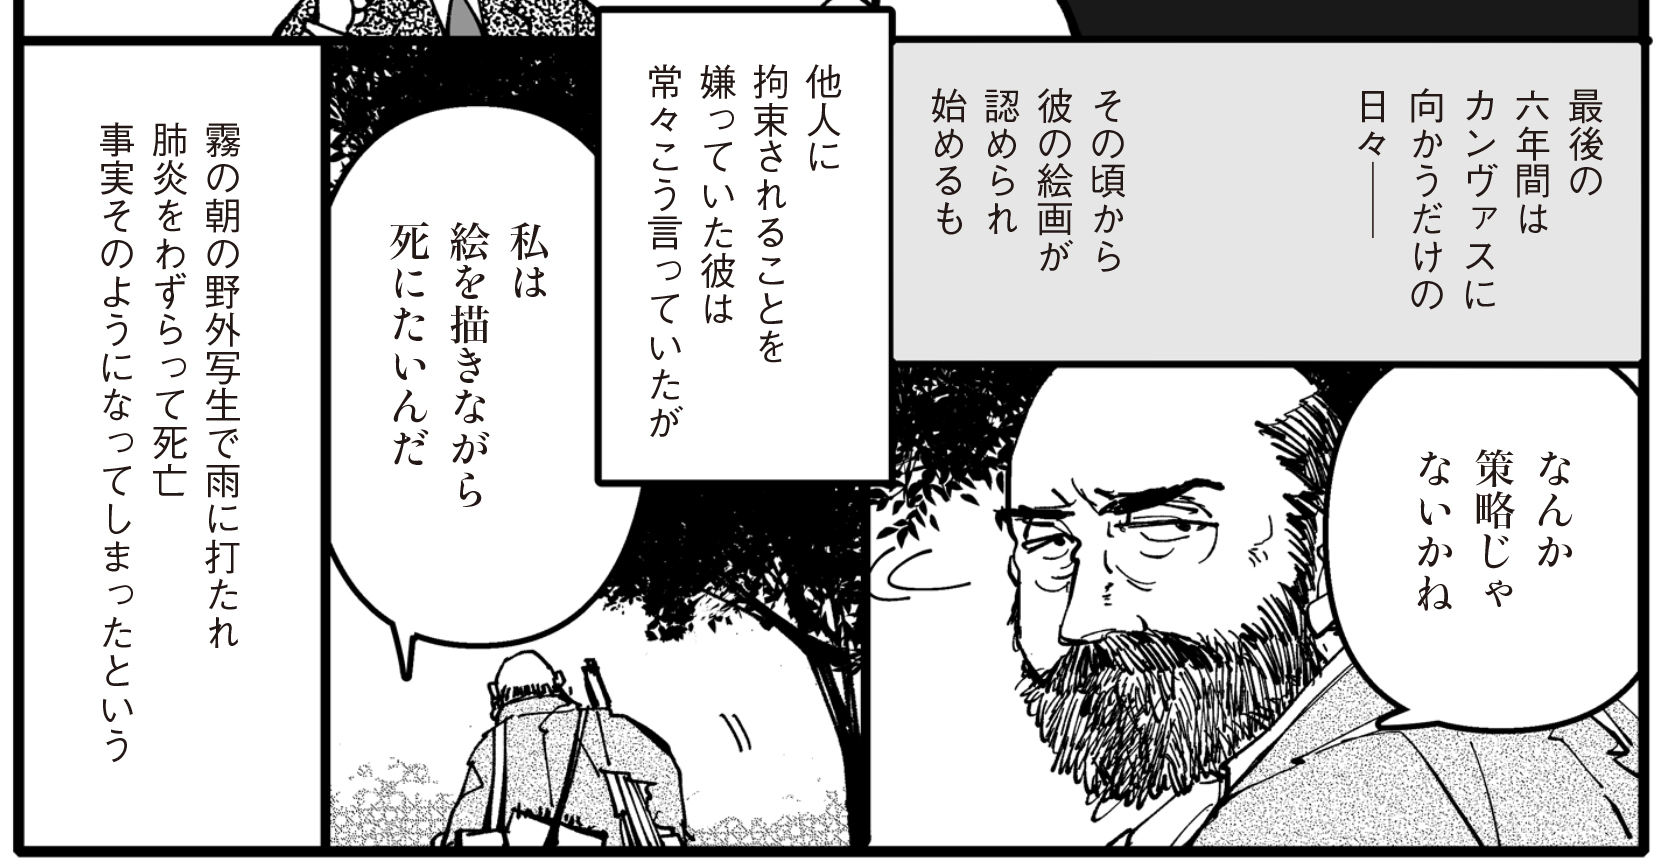 山田風太郎による名著『人間臨終図巻』漫画化の画像